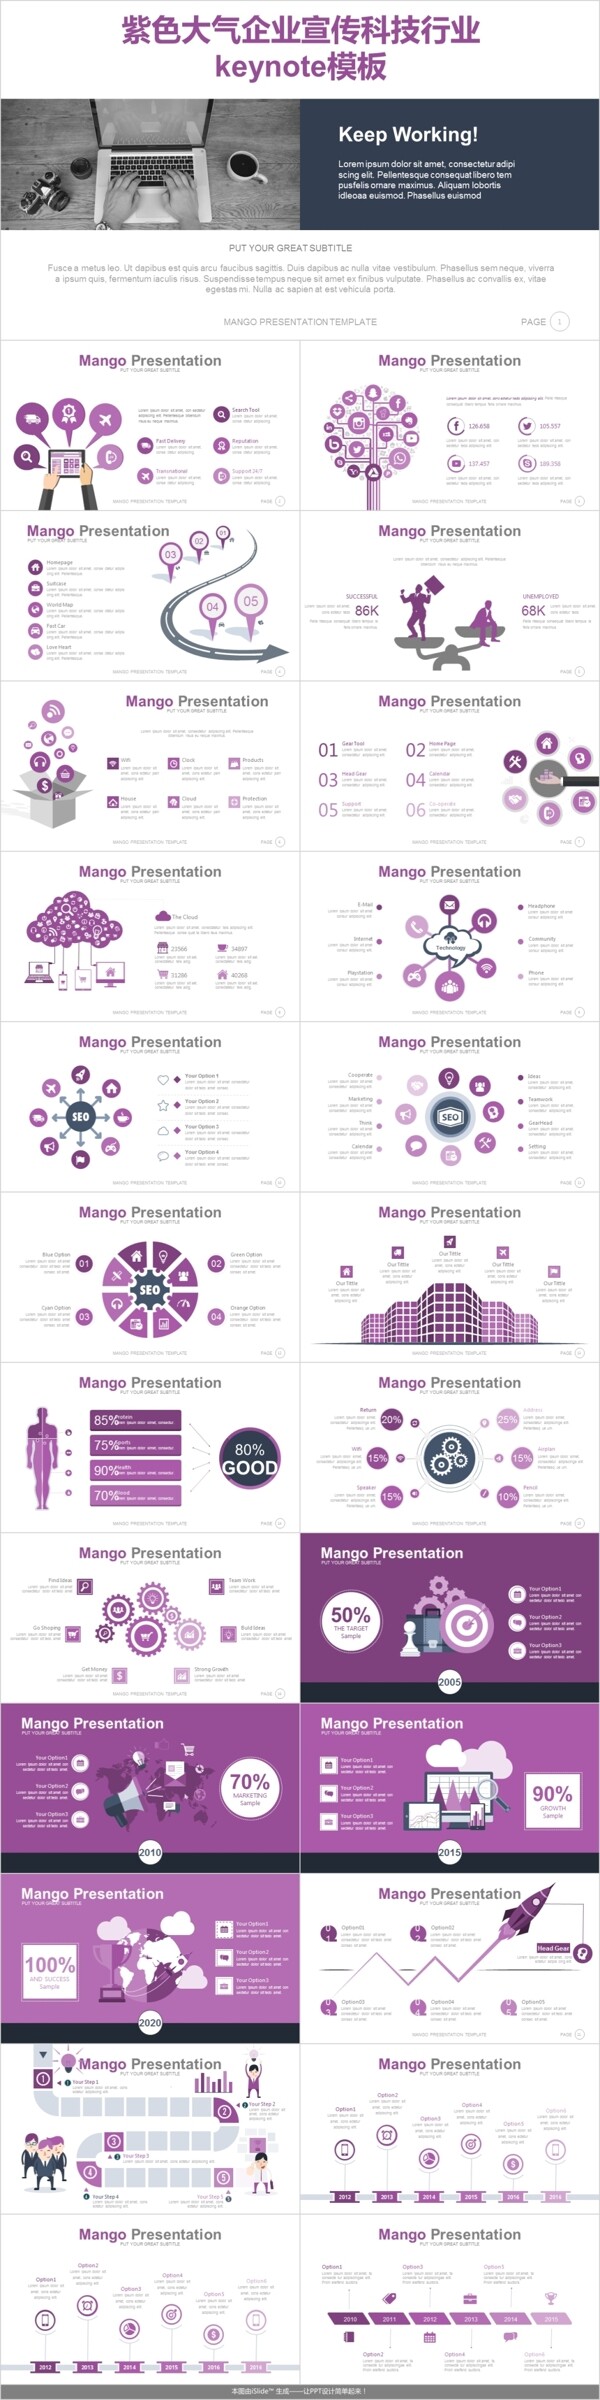 紫色大气企业宣传科技行业keynote模板